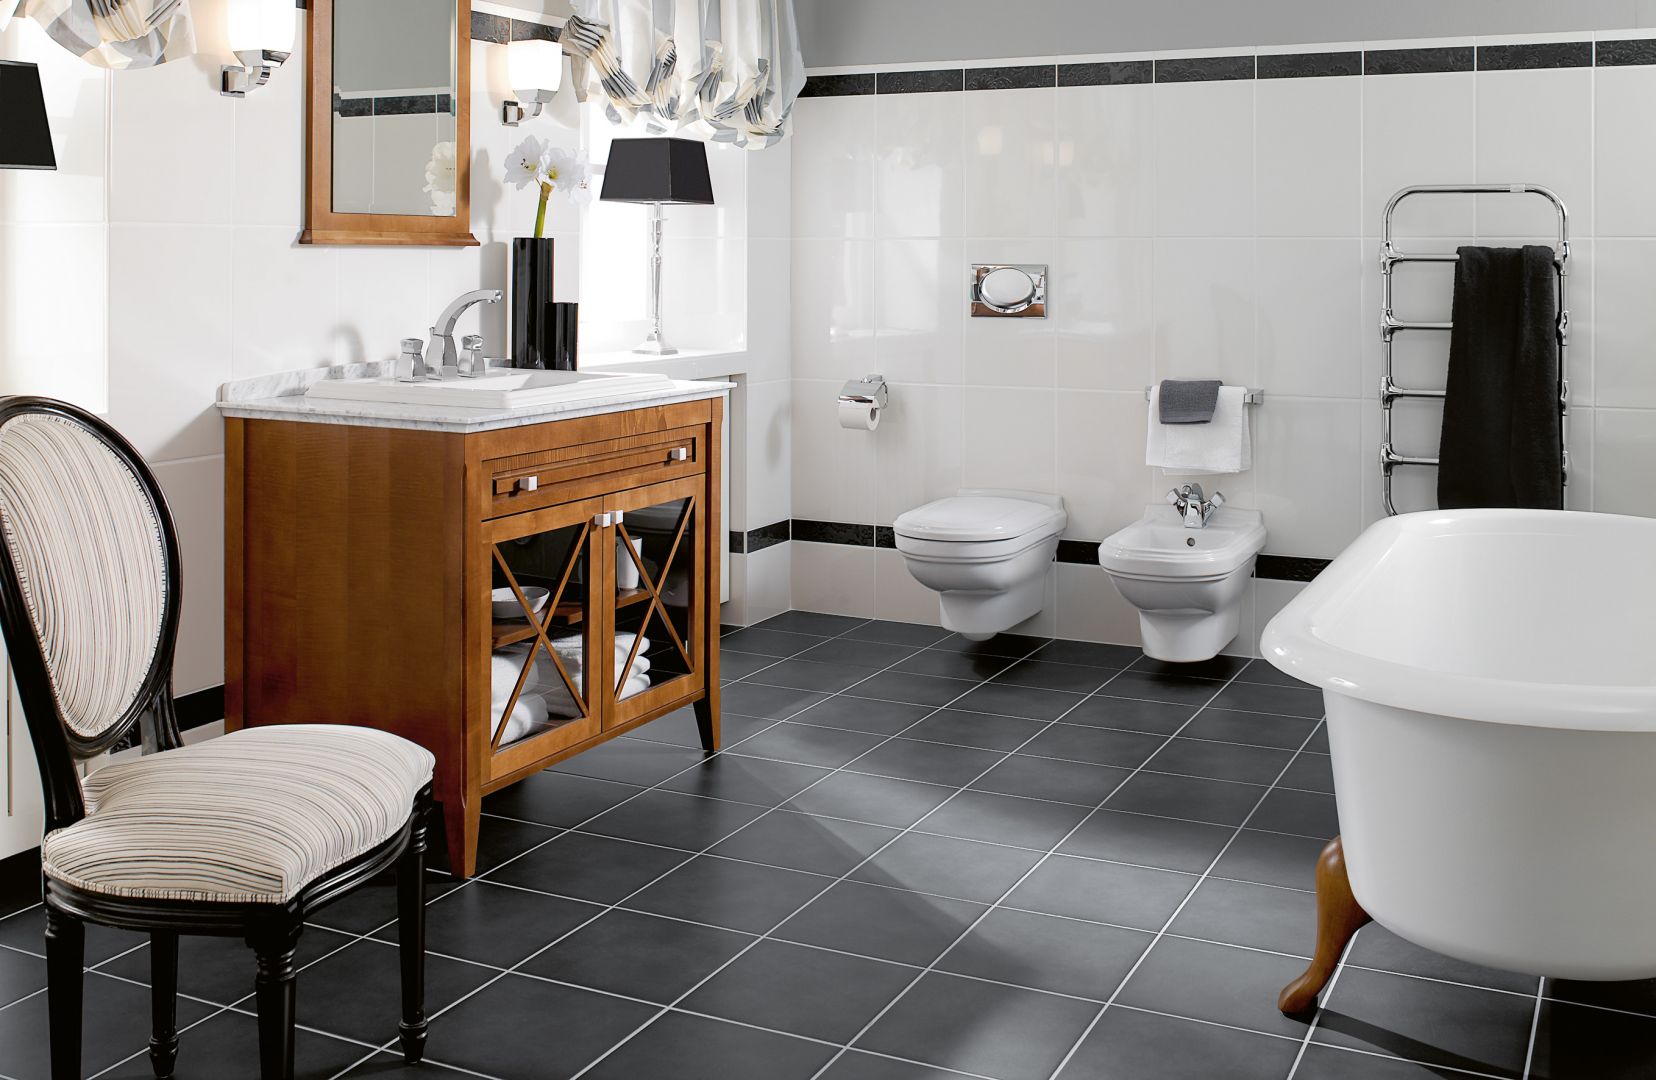 Meble Hommage optymalnie zagospodarują przestrzeń w łazience i to w pięknym stylu. Fot. Villeroy & Boch